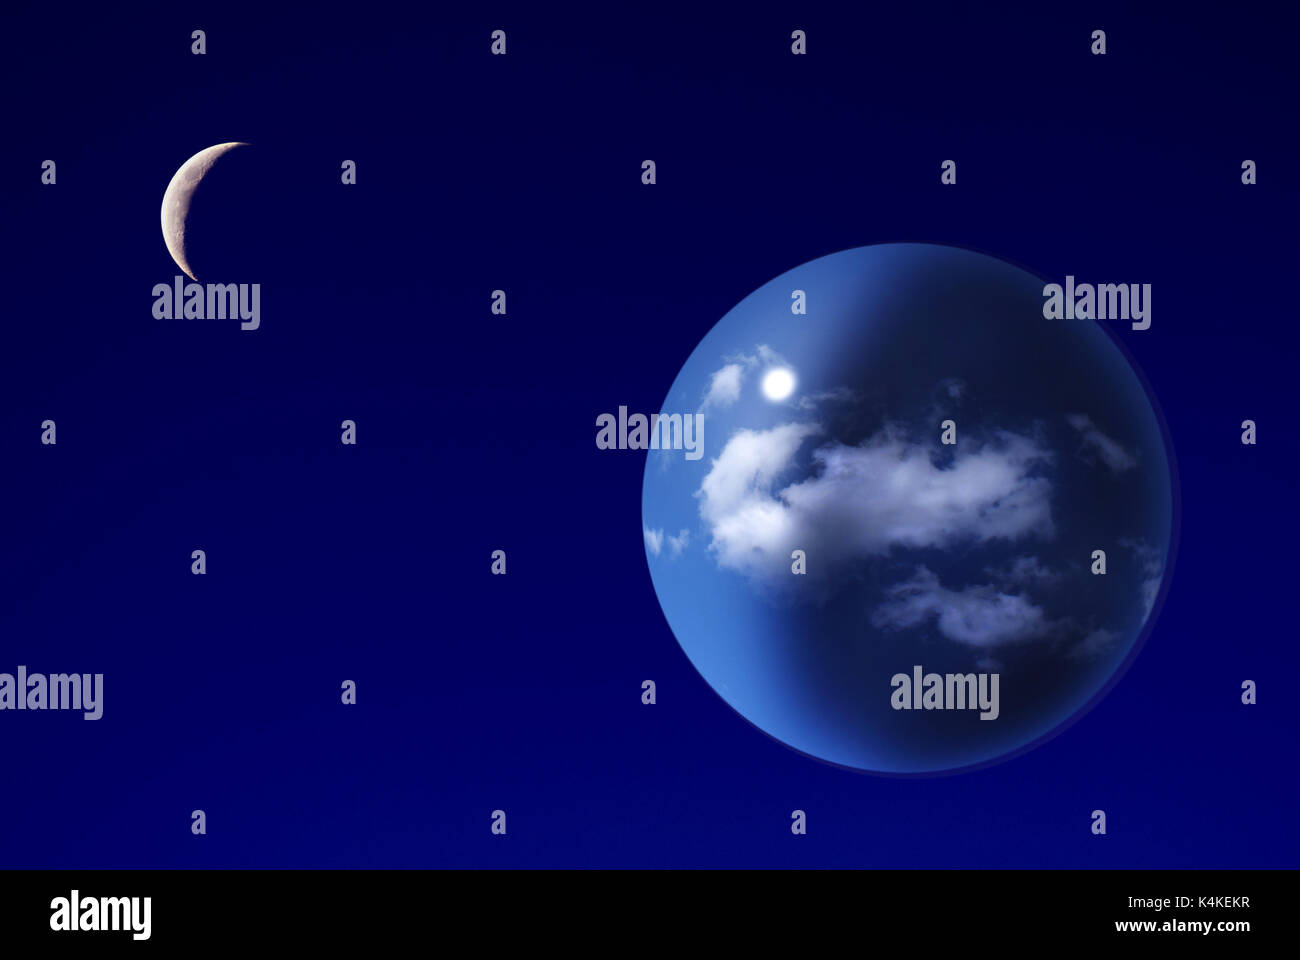 Illustration de l'exoplanète (monde étranger) avec sa lune Banque D'Images